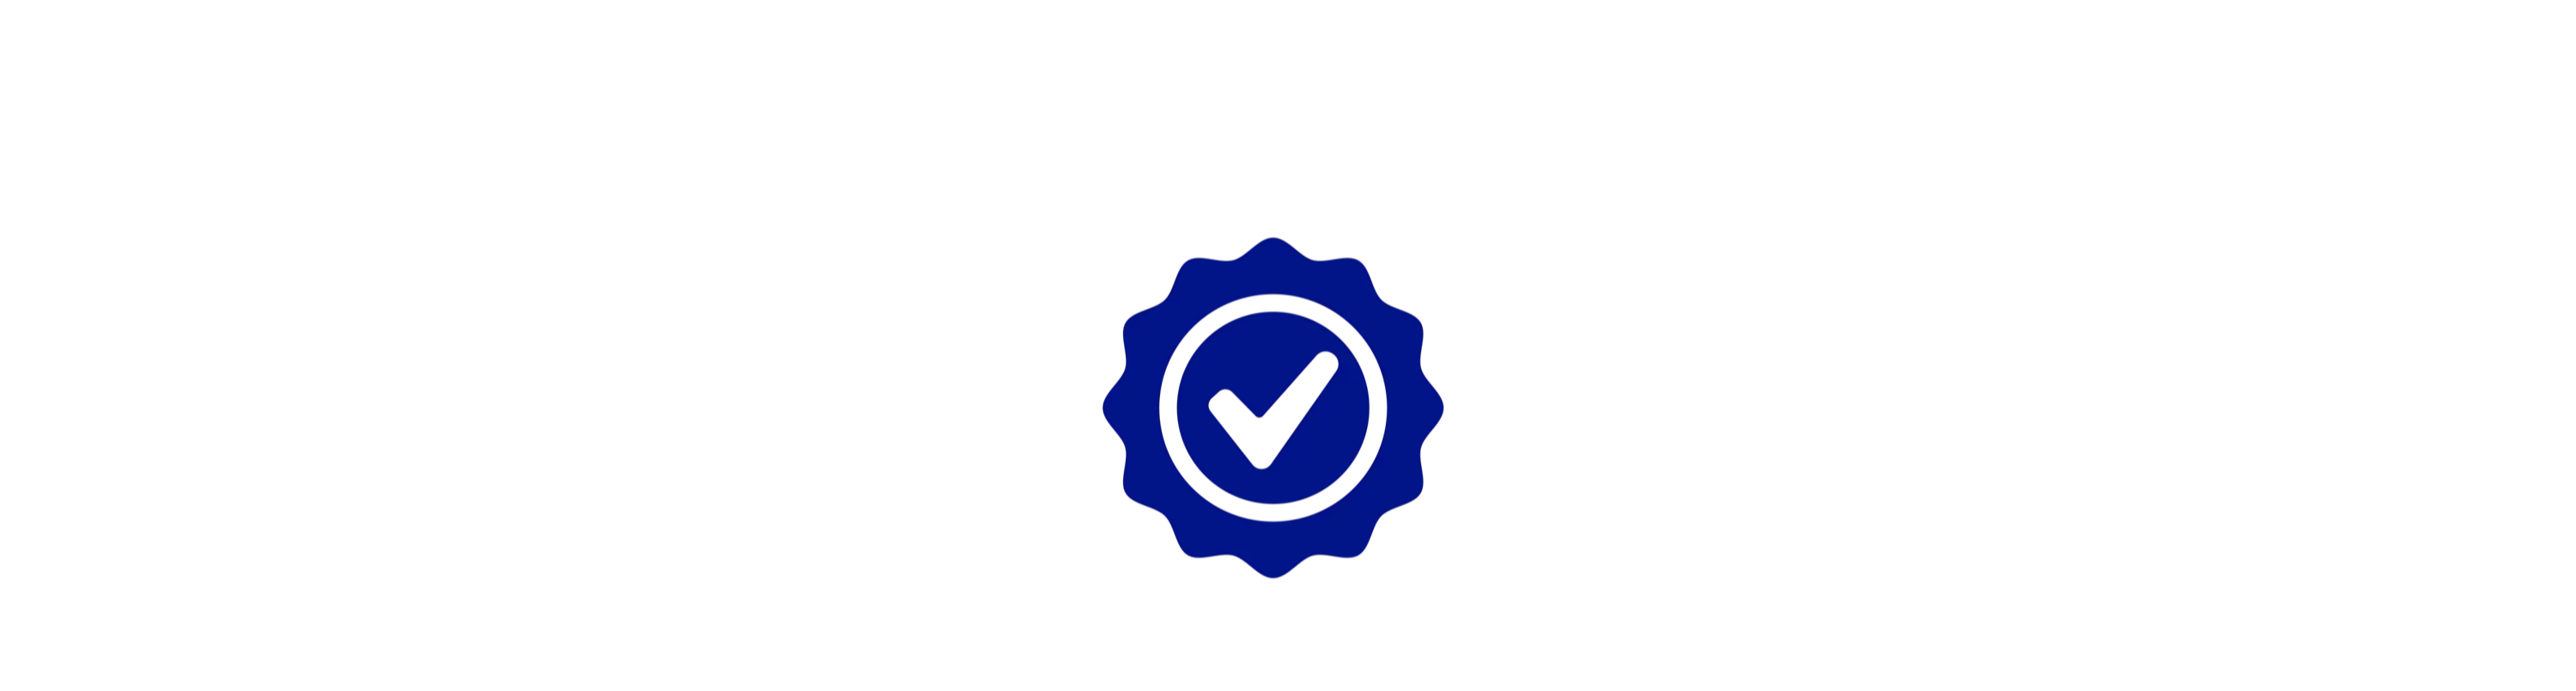 logo de la marque de contrôle